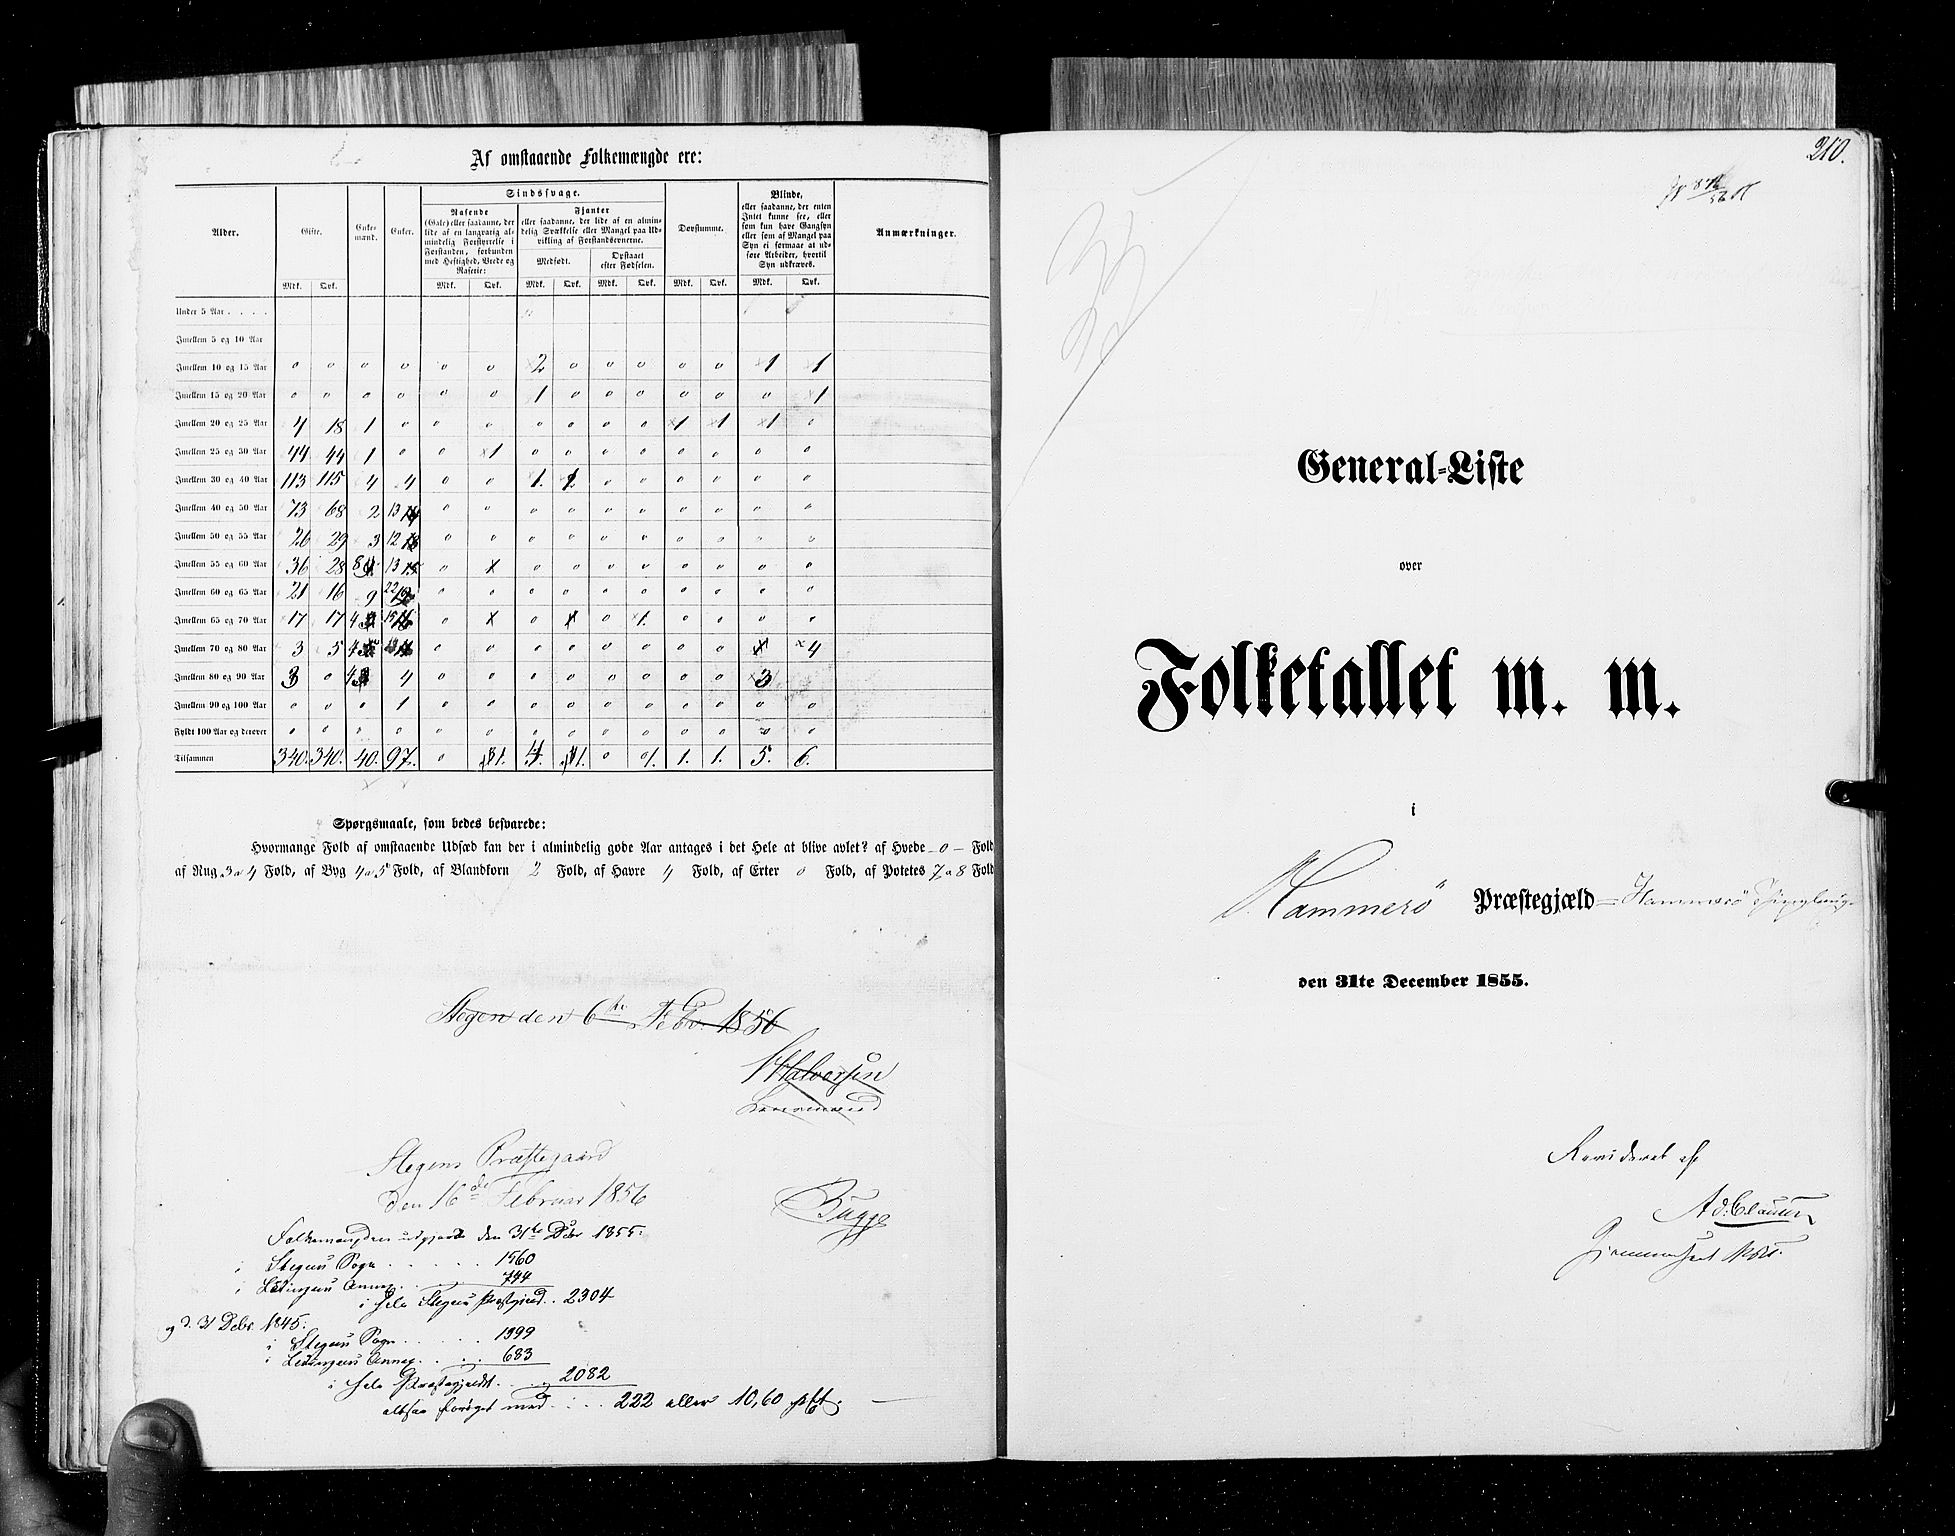 RA, Folketellingen 1855, bind 6B: Nordland amt og Finnmarken amt, 1855, s. 210